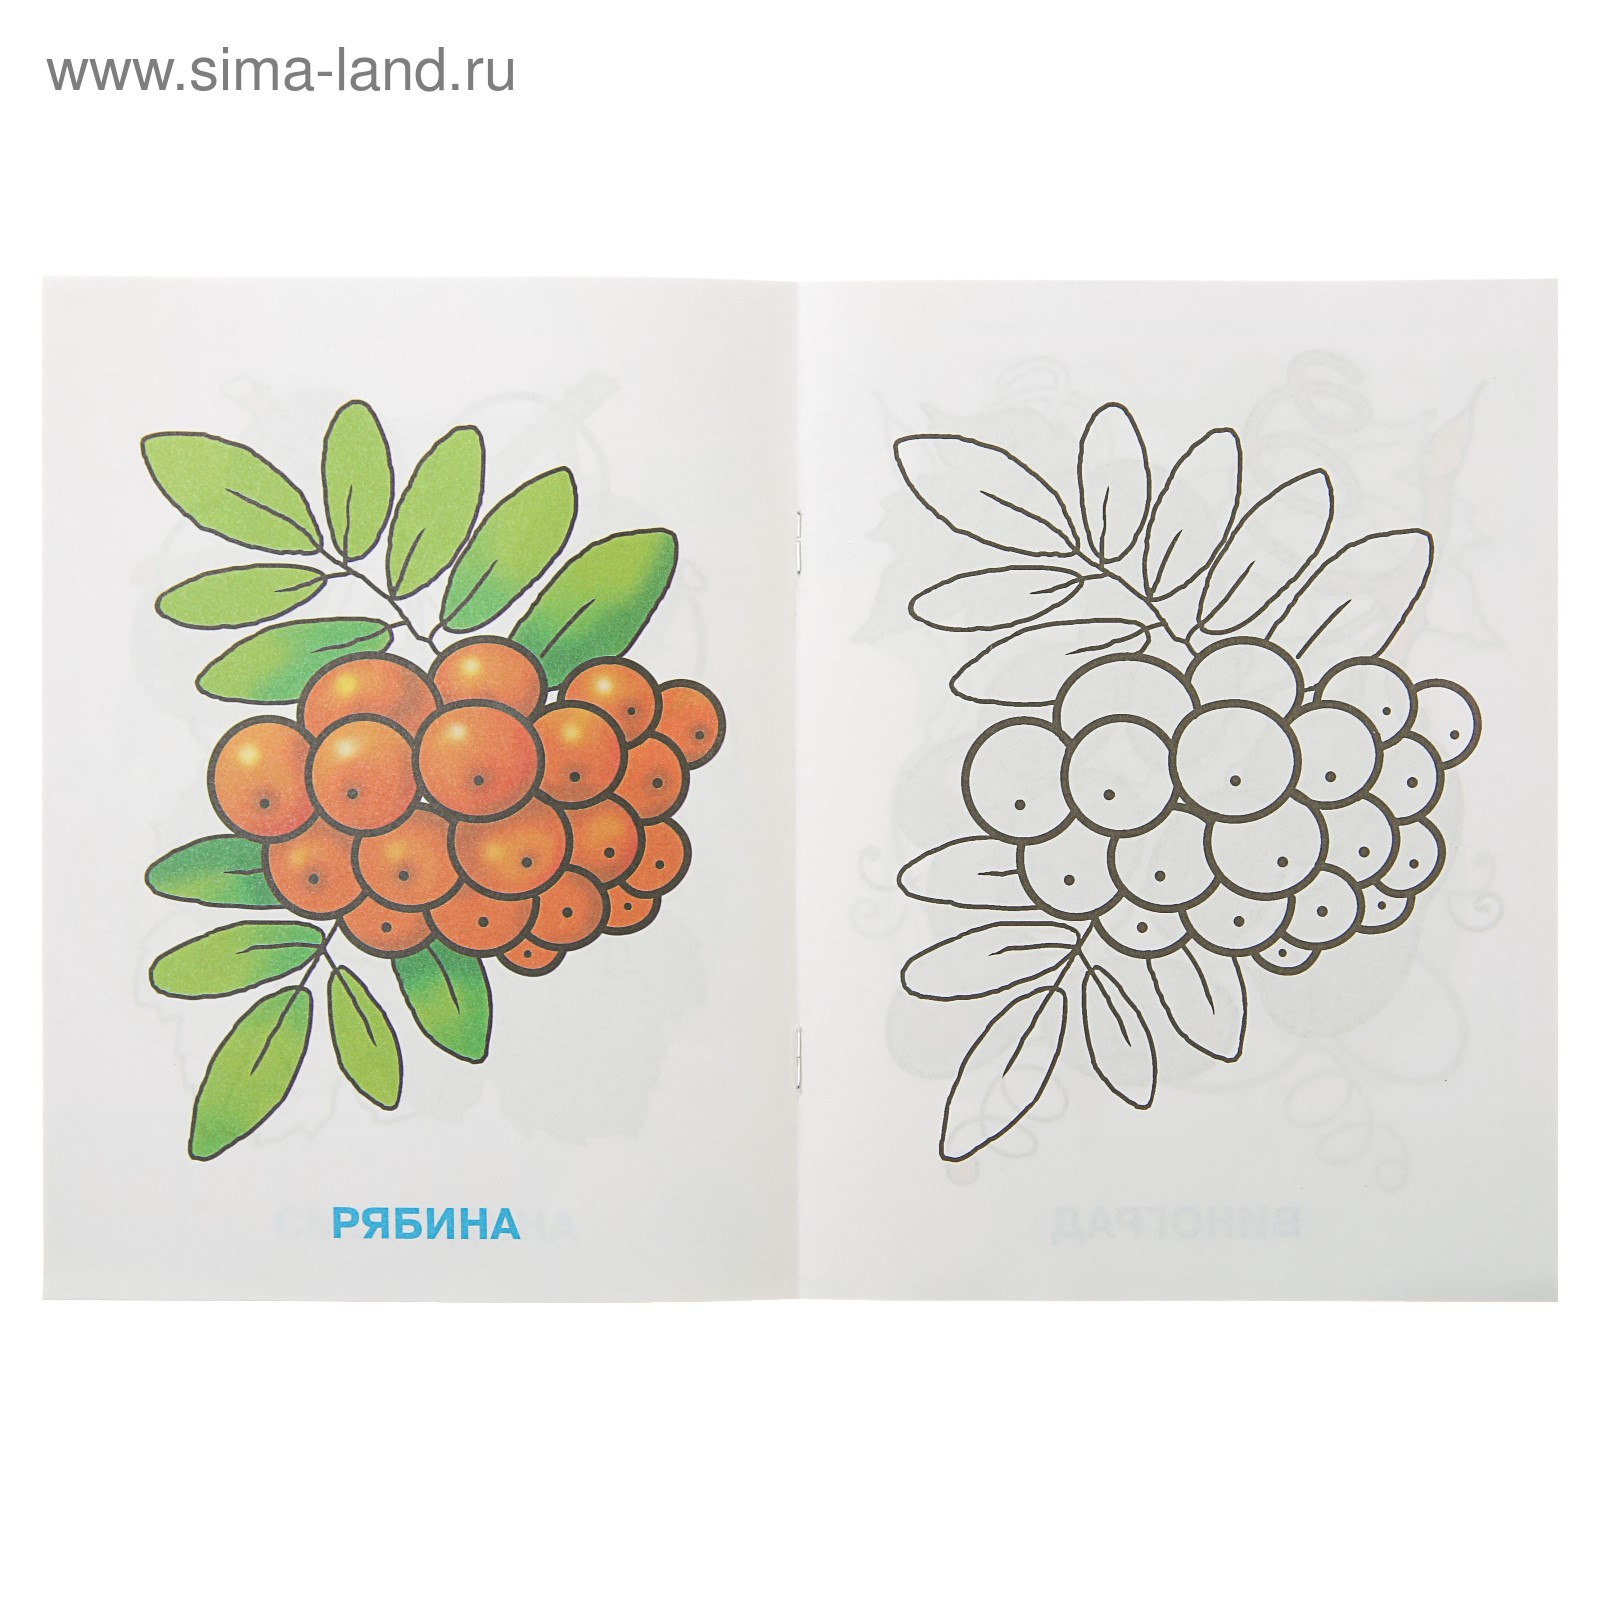 Раскраски Лесные ягоды для детей 3-4 лет